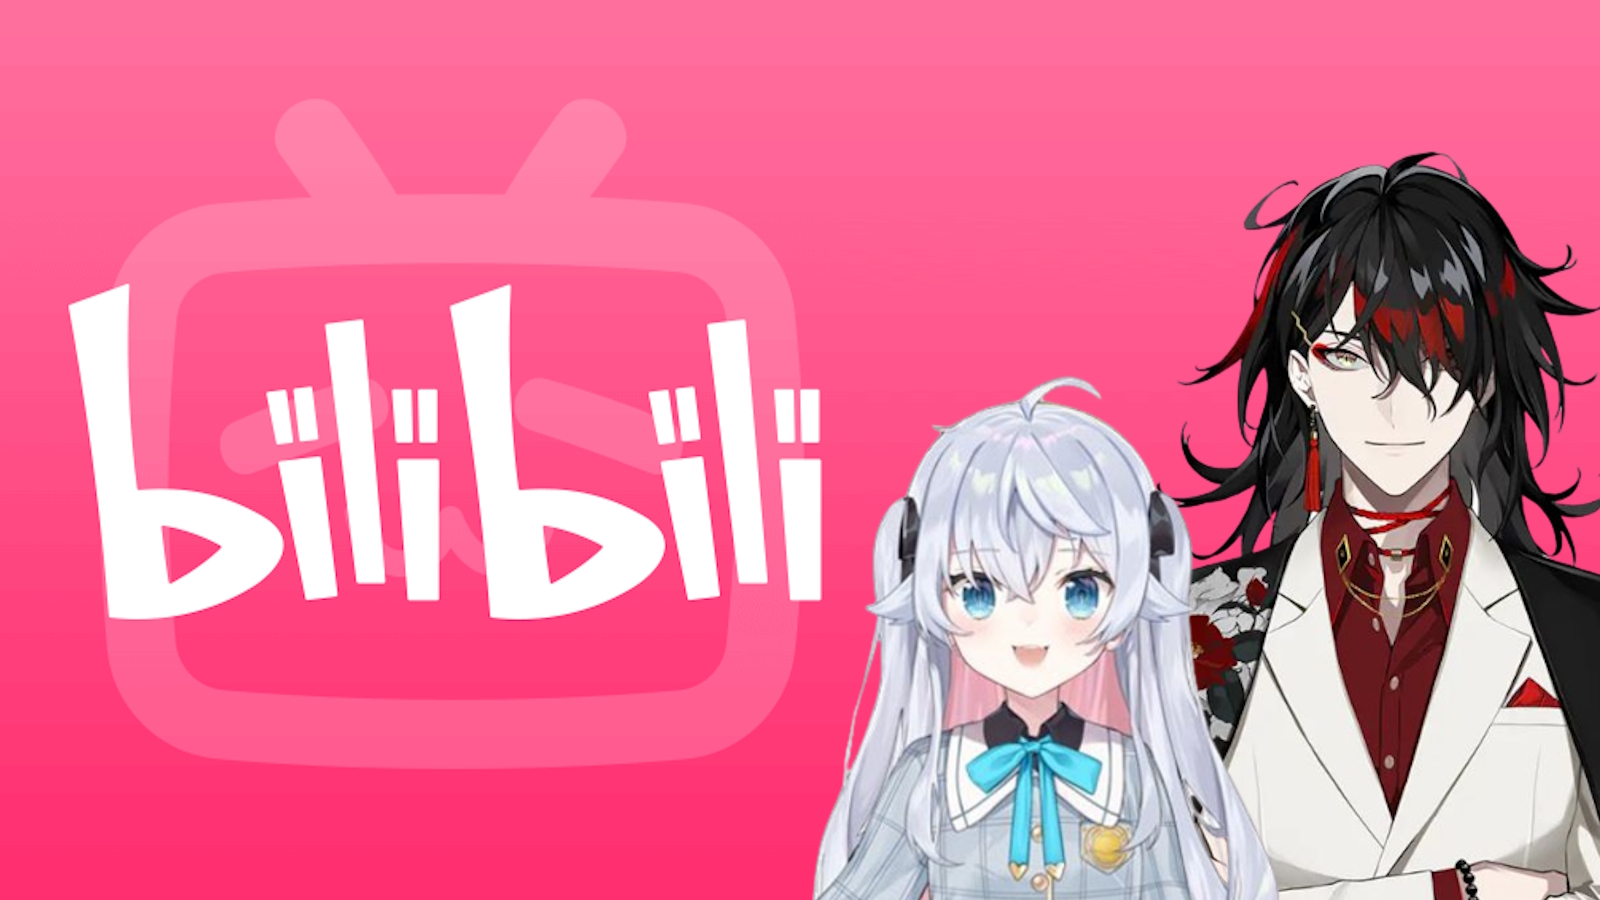 All 2023 new anime list - BiliBili